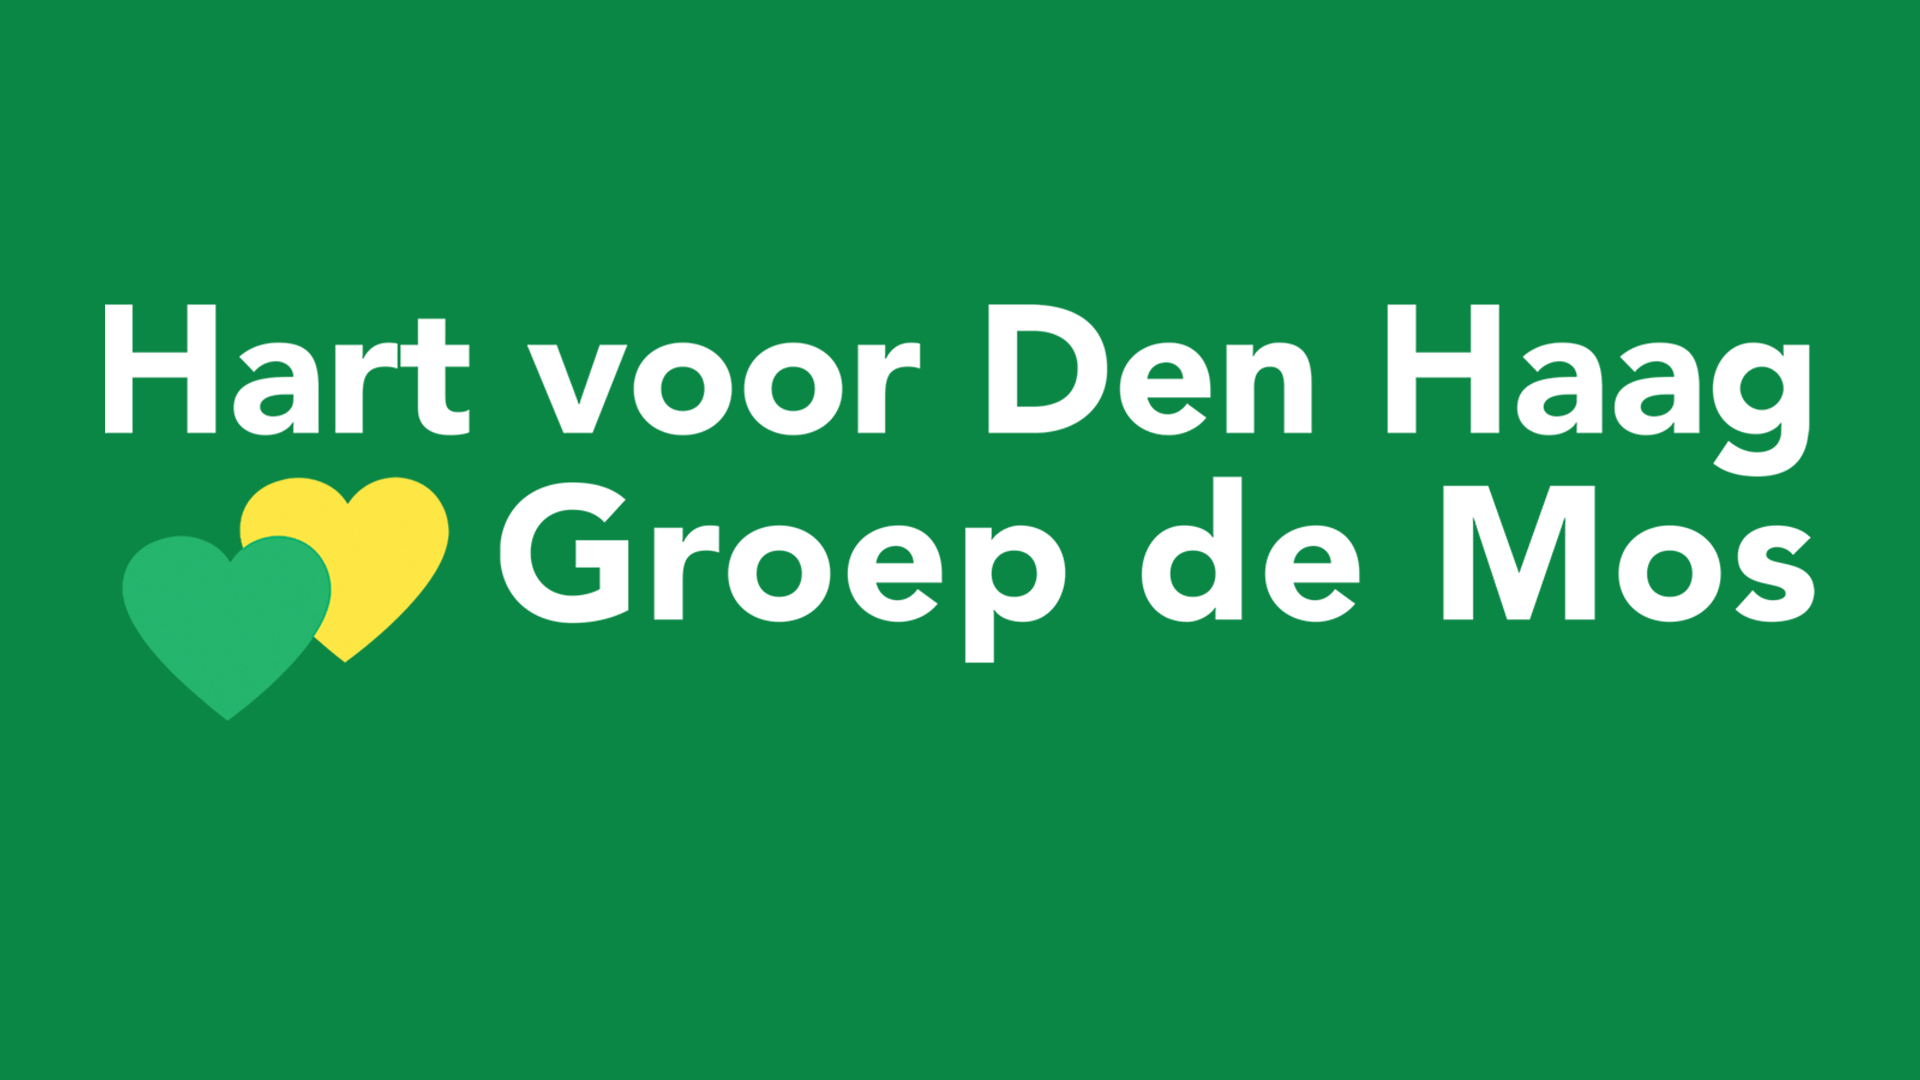 Hart voor Den Haag / Groep de Mos